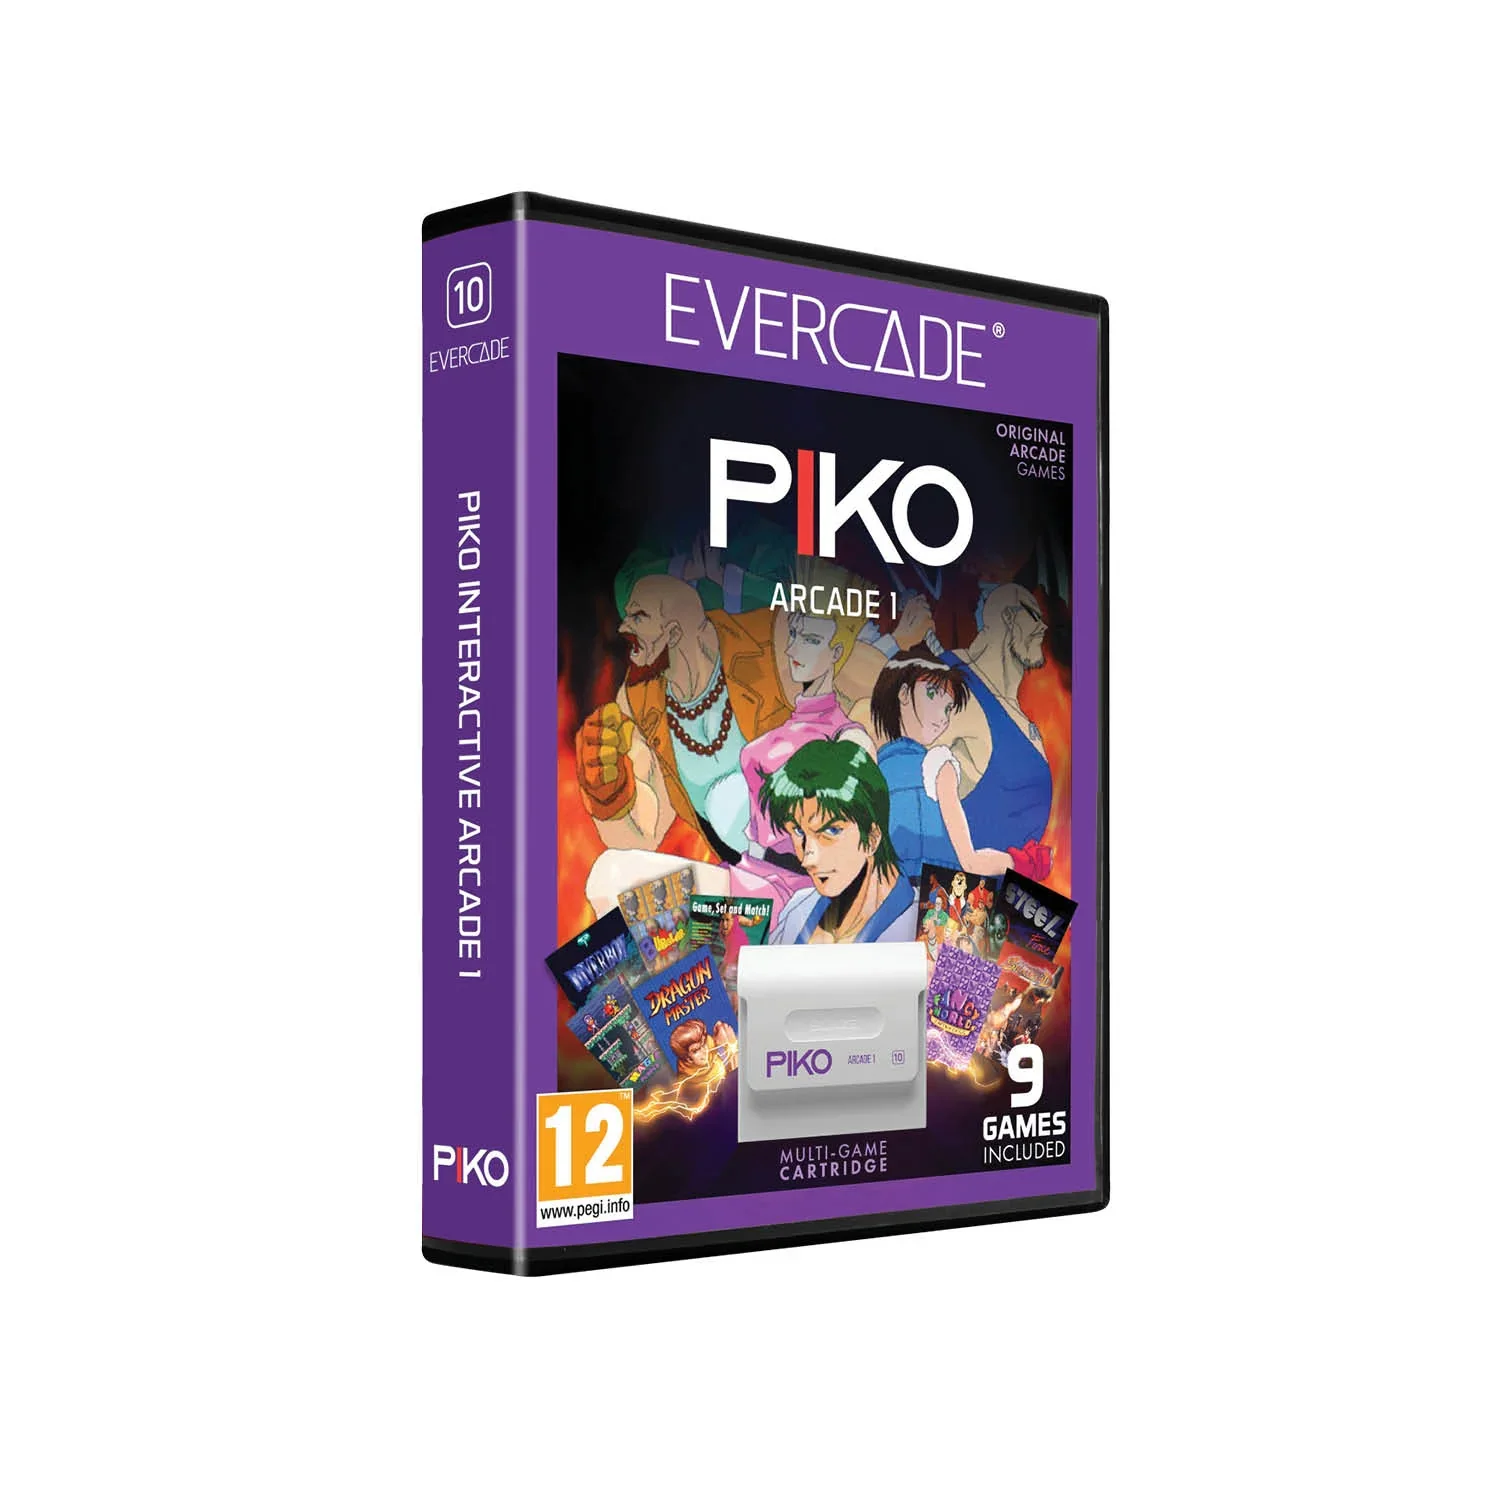 Image of #10 Piko Arcade Collection 1 - Evercade Cartridge